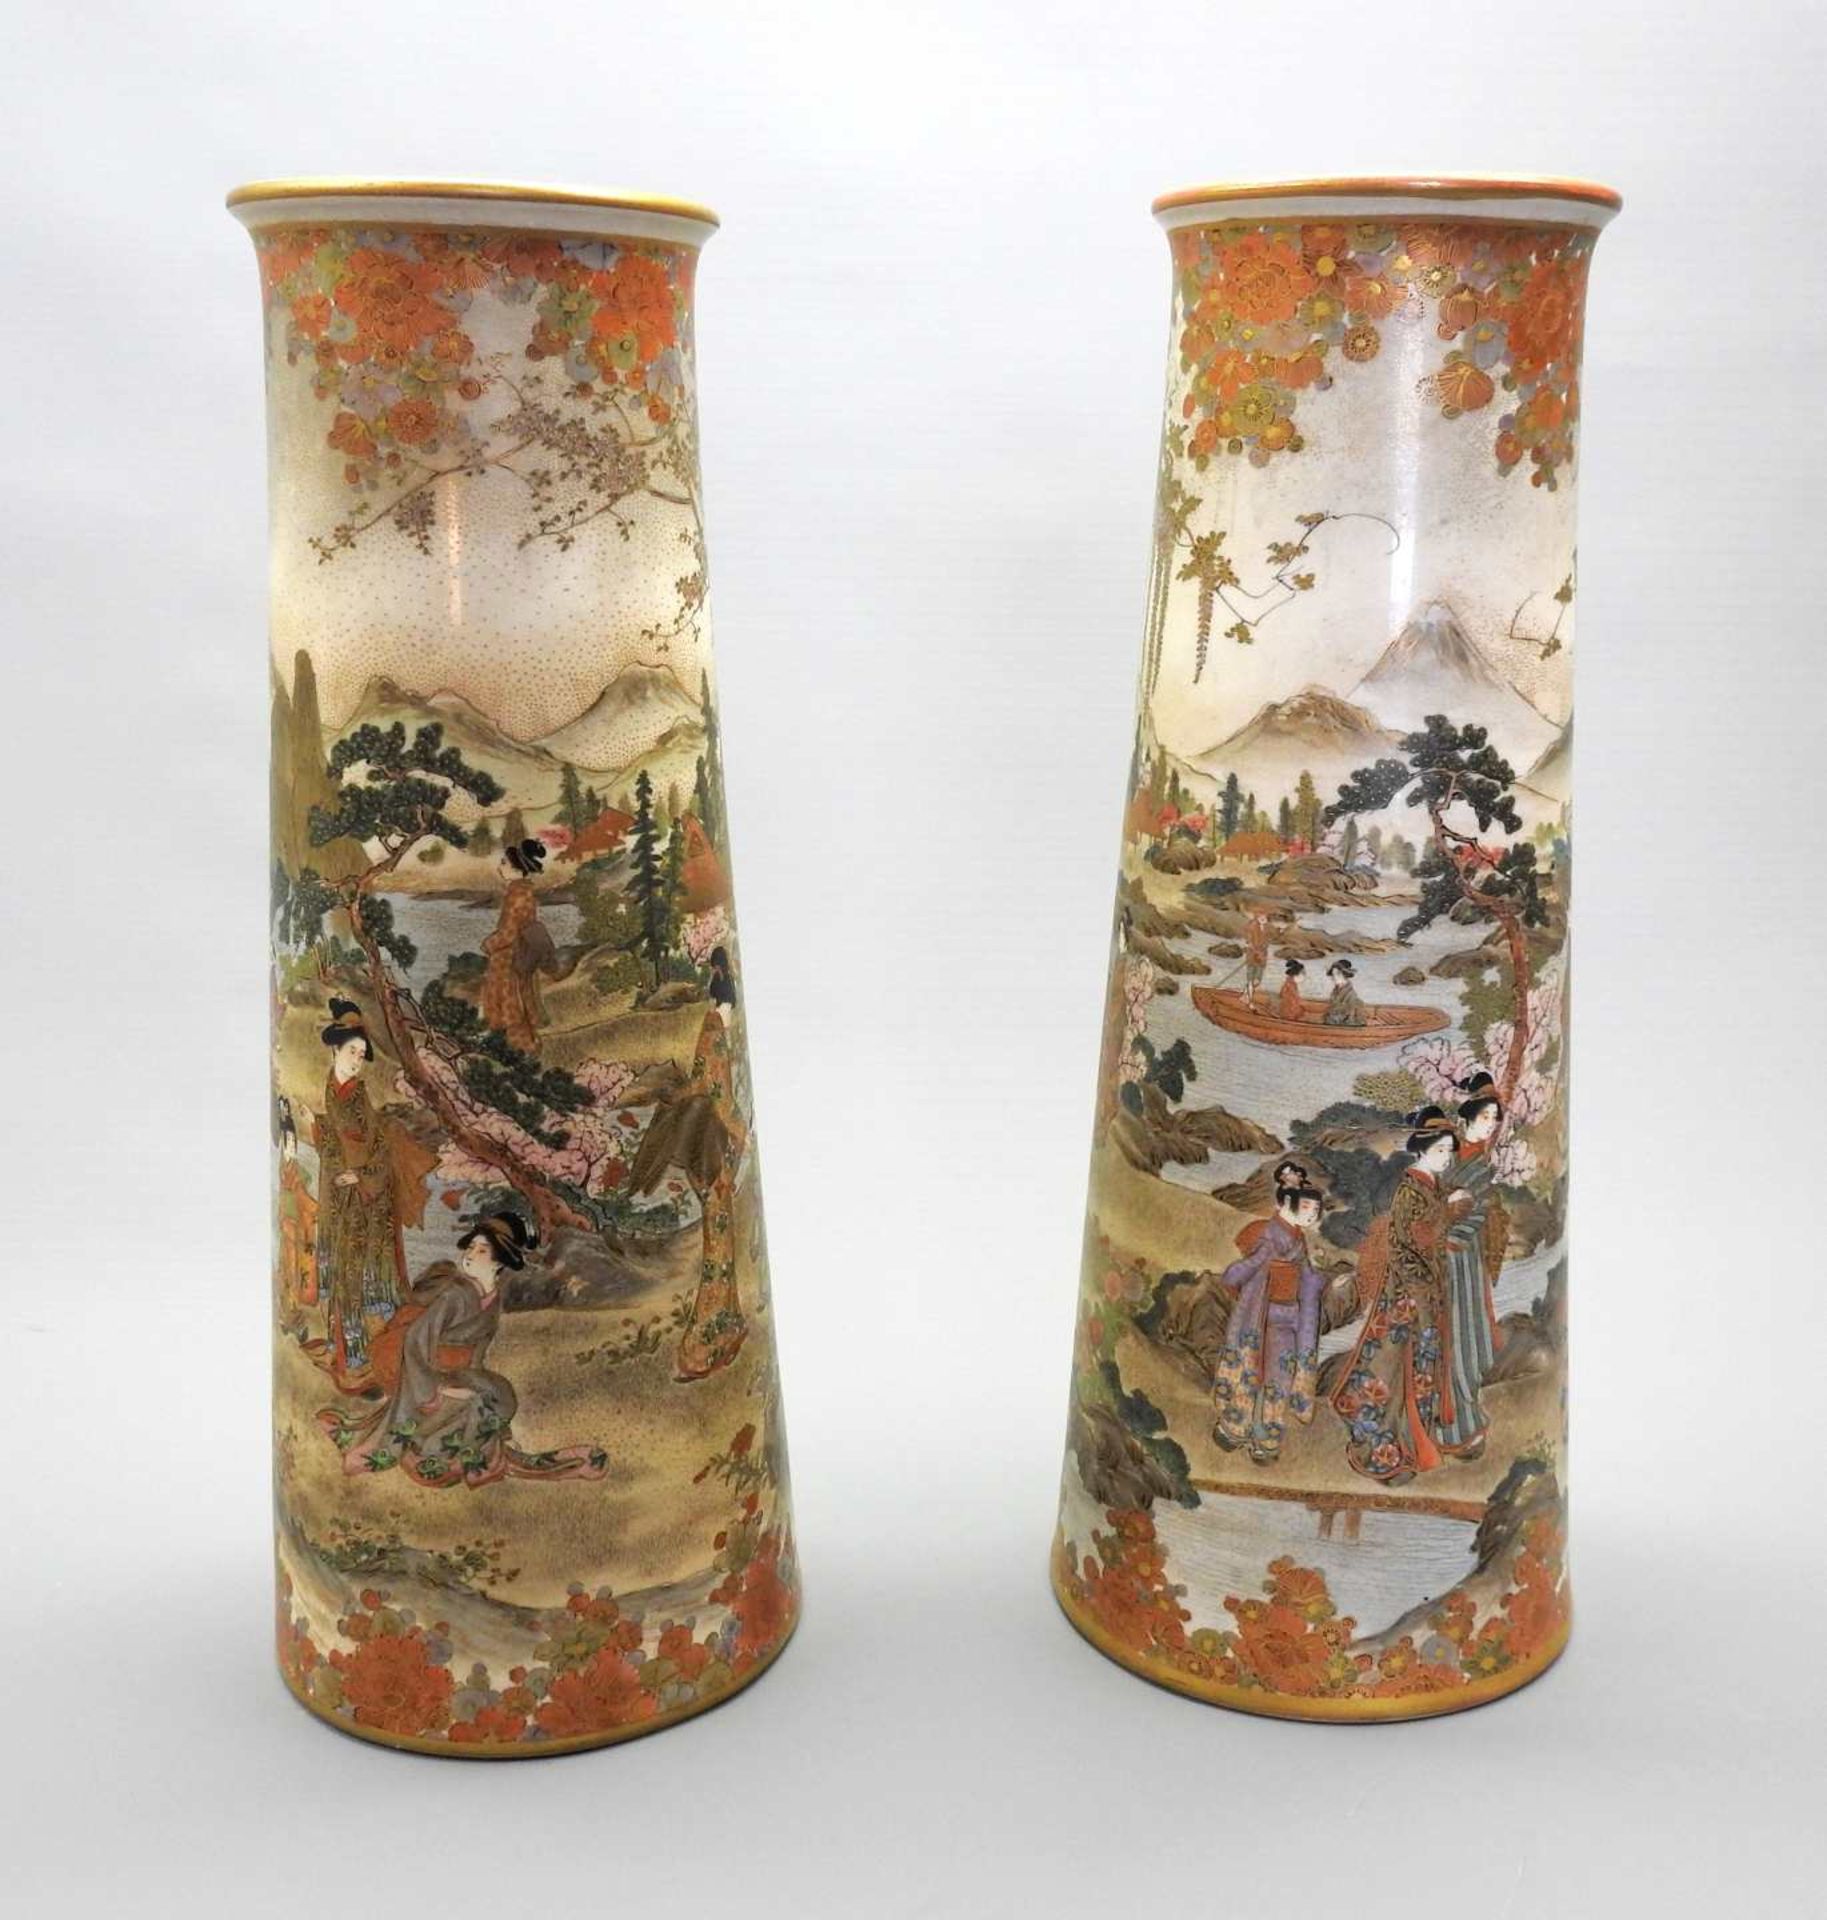 Paar asiatische Vasen Porzellan, am Boden mit aufglasurroter Marke versehen. Nach oben